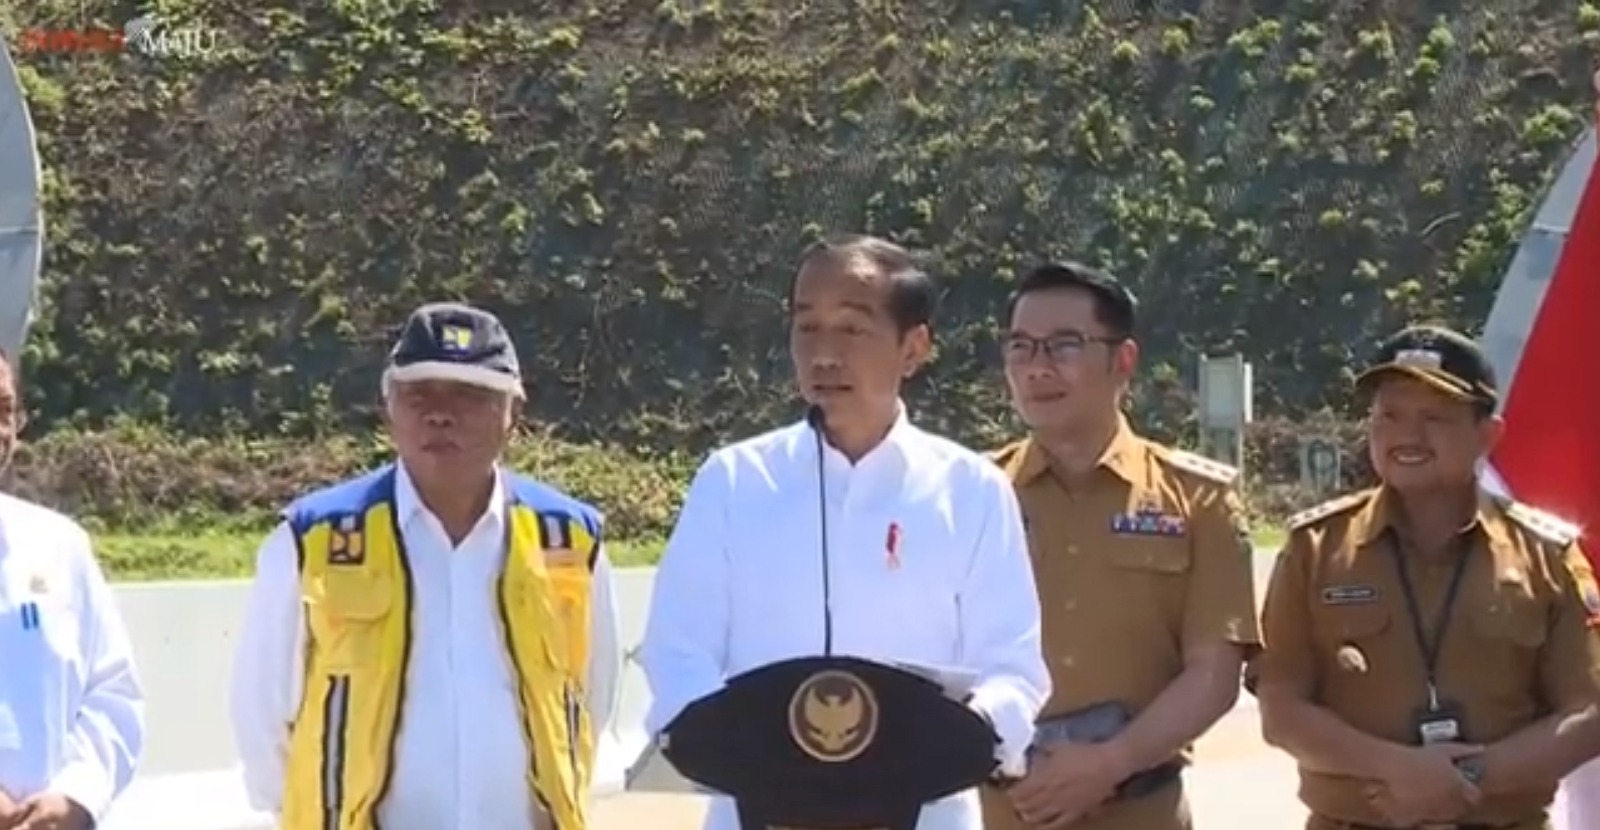 Jokowi Resmikan Tol Cisumdawu, Mempermudah Akses ke Bandara Kertajati!